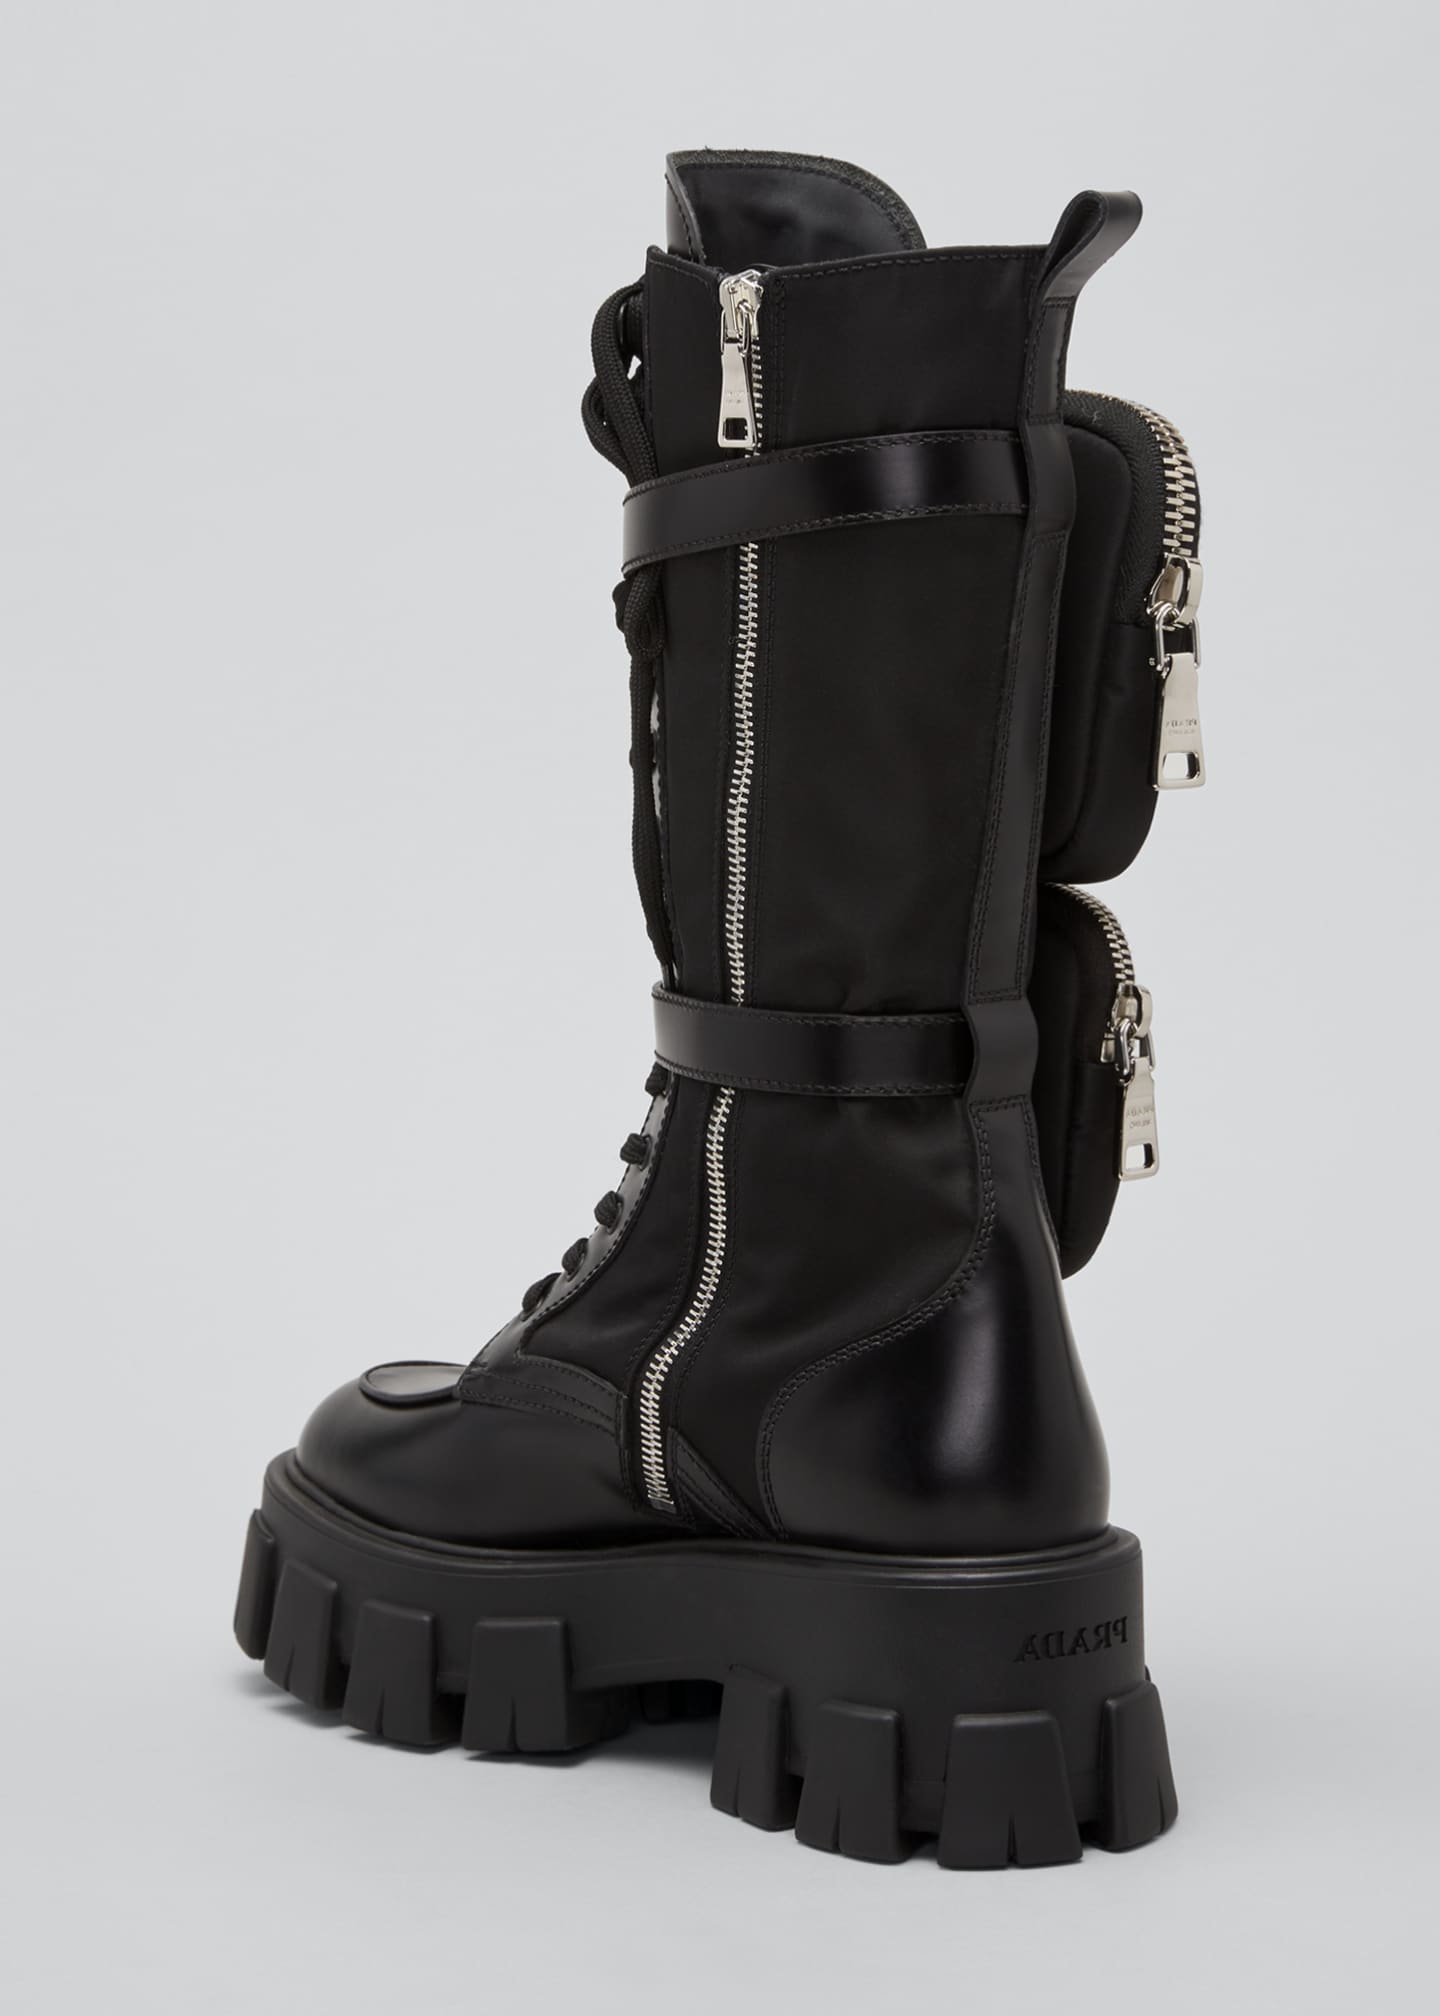 prada combat boots women's